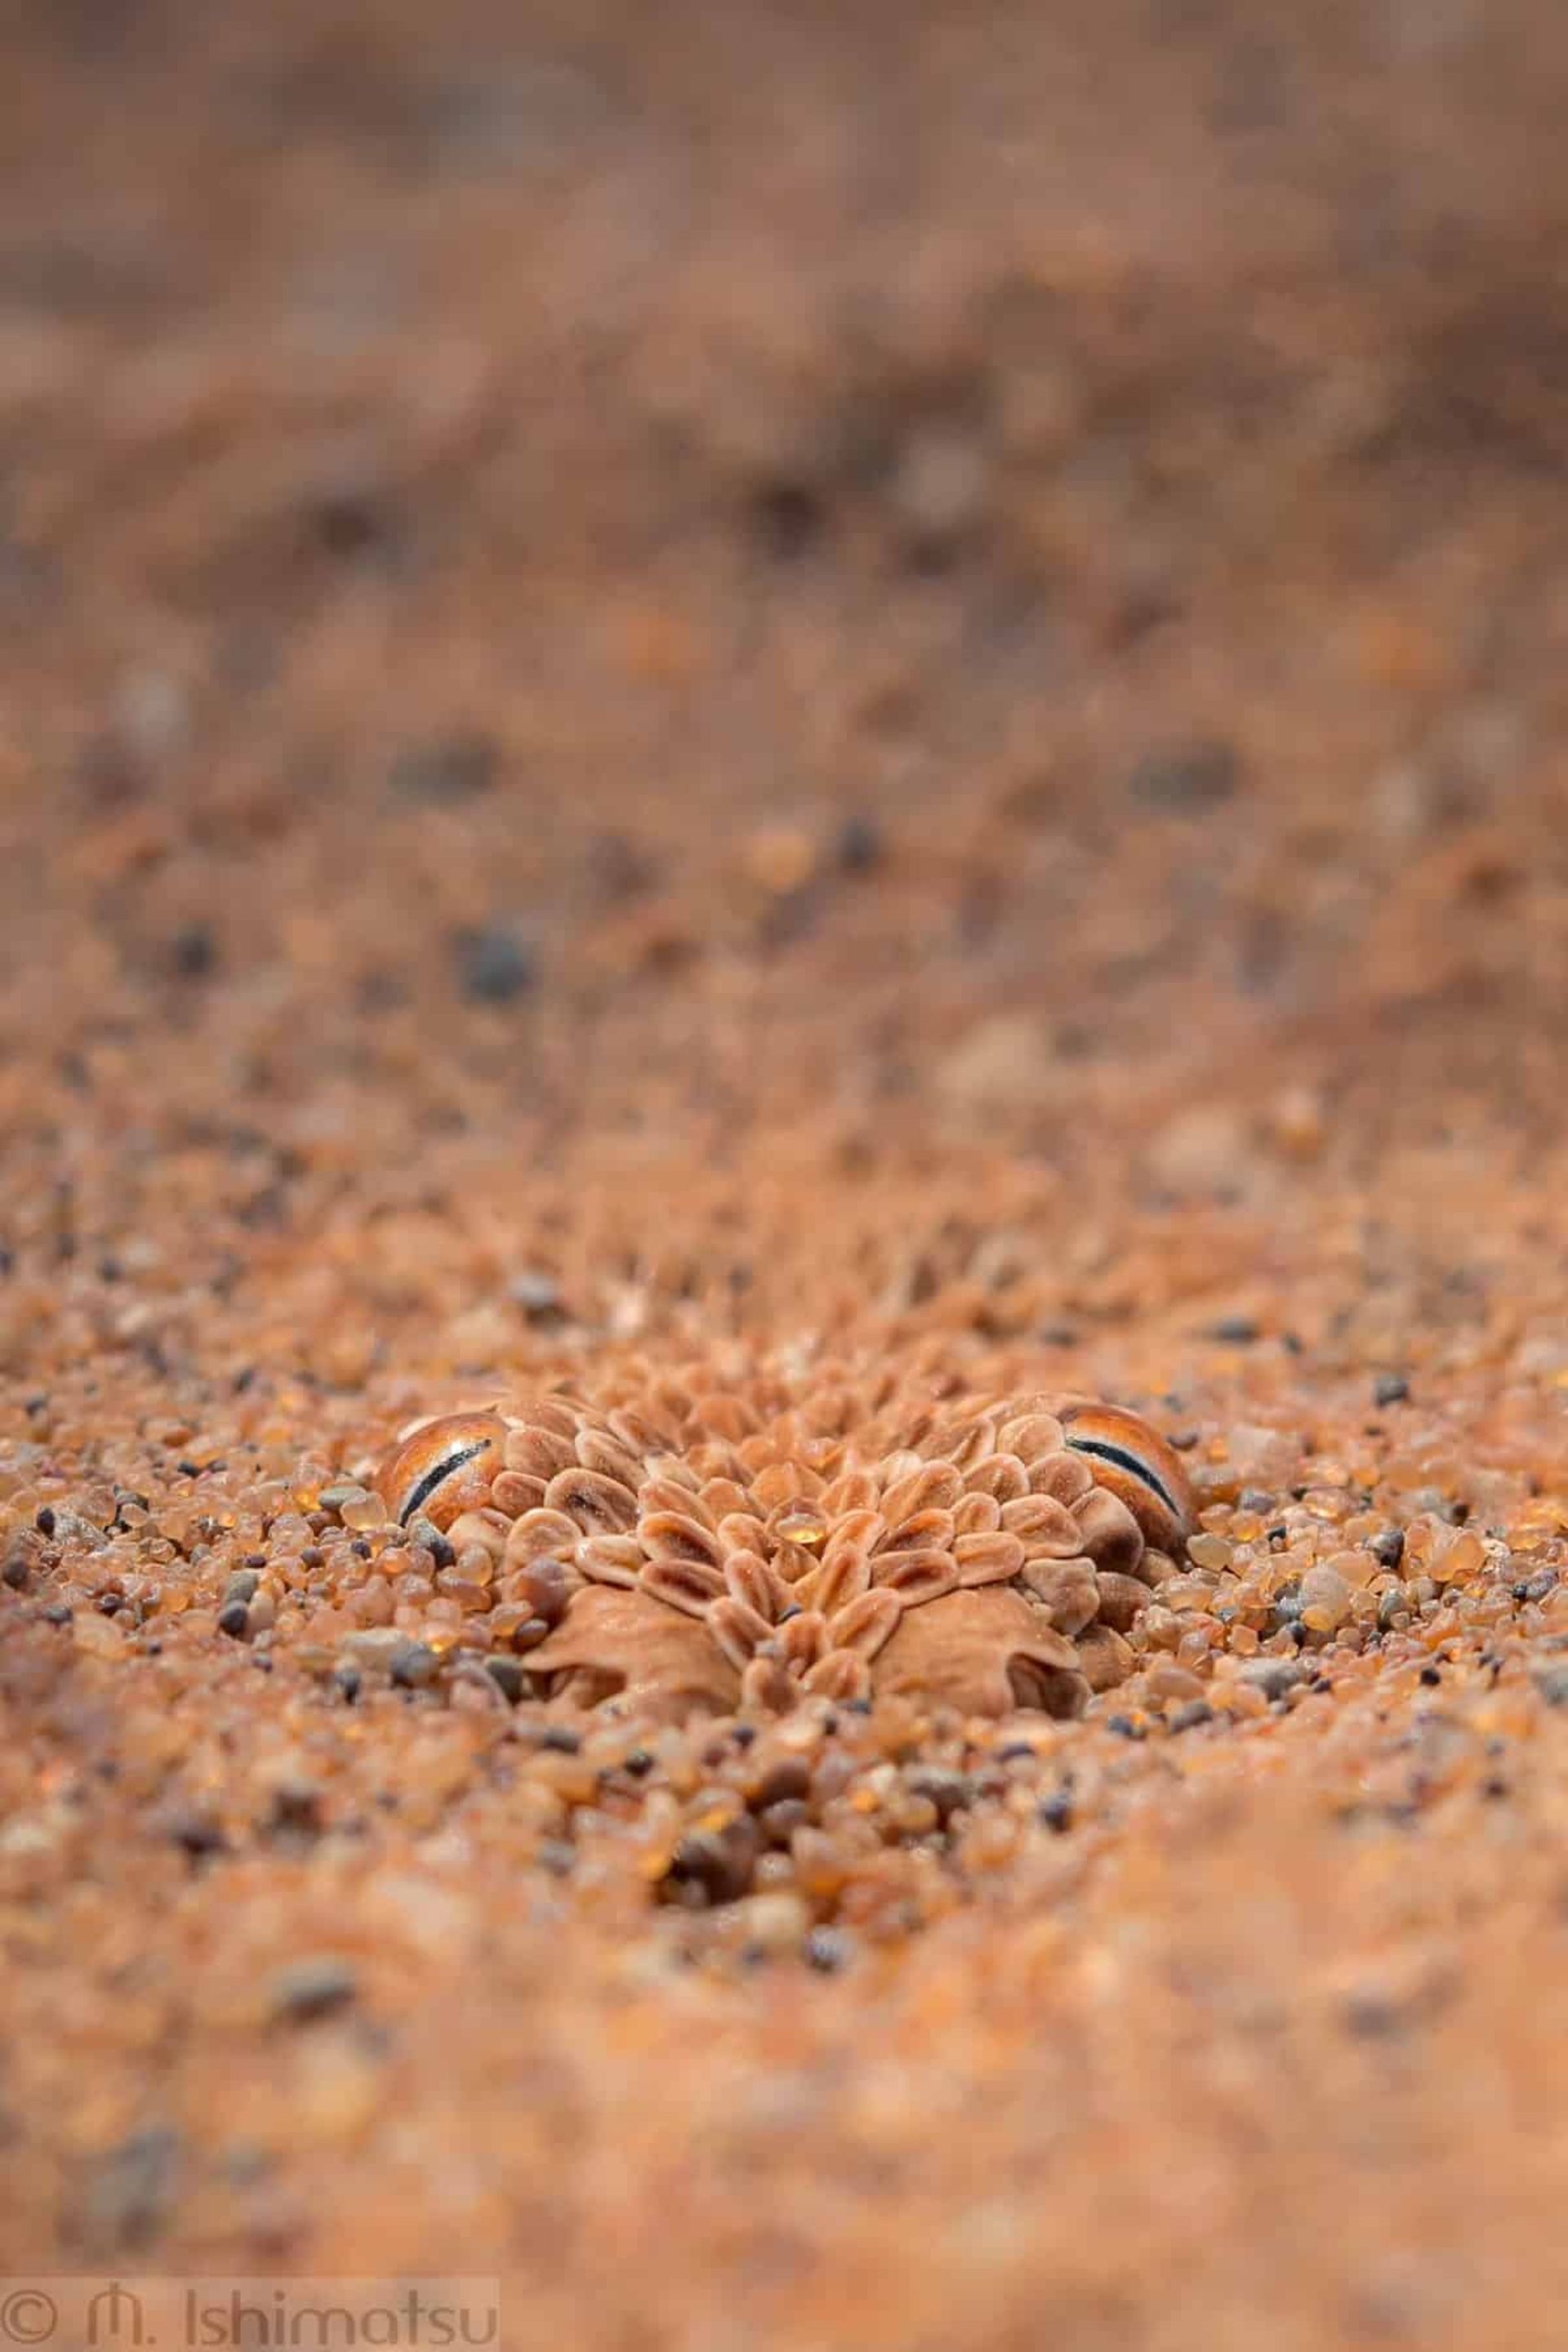 افعی پرینگویی (Bitis peringueyi) در نامیبیا